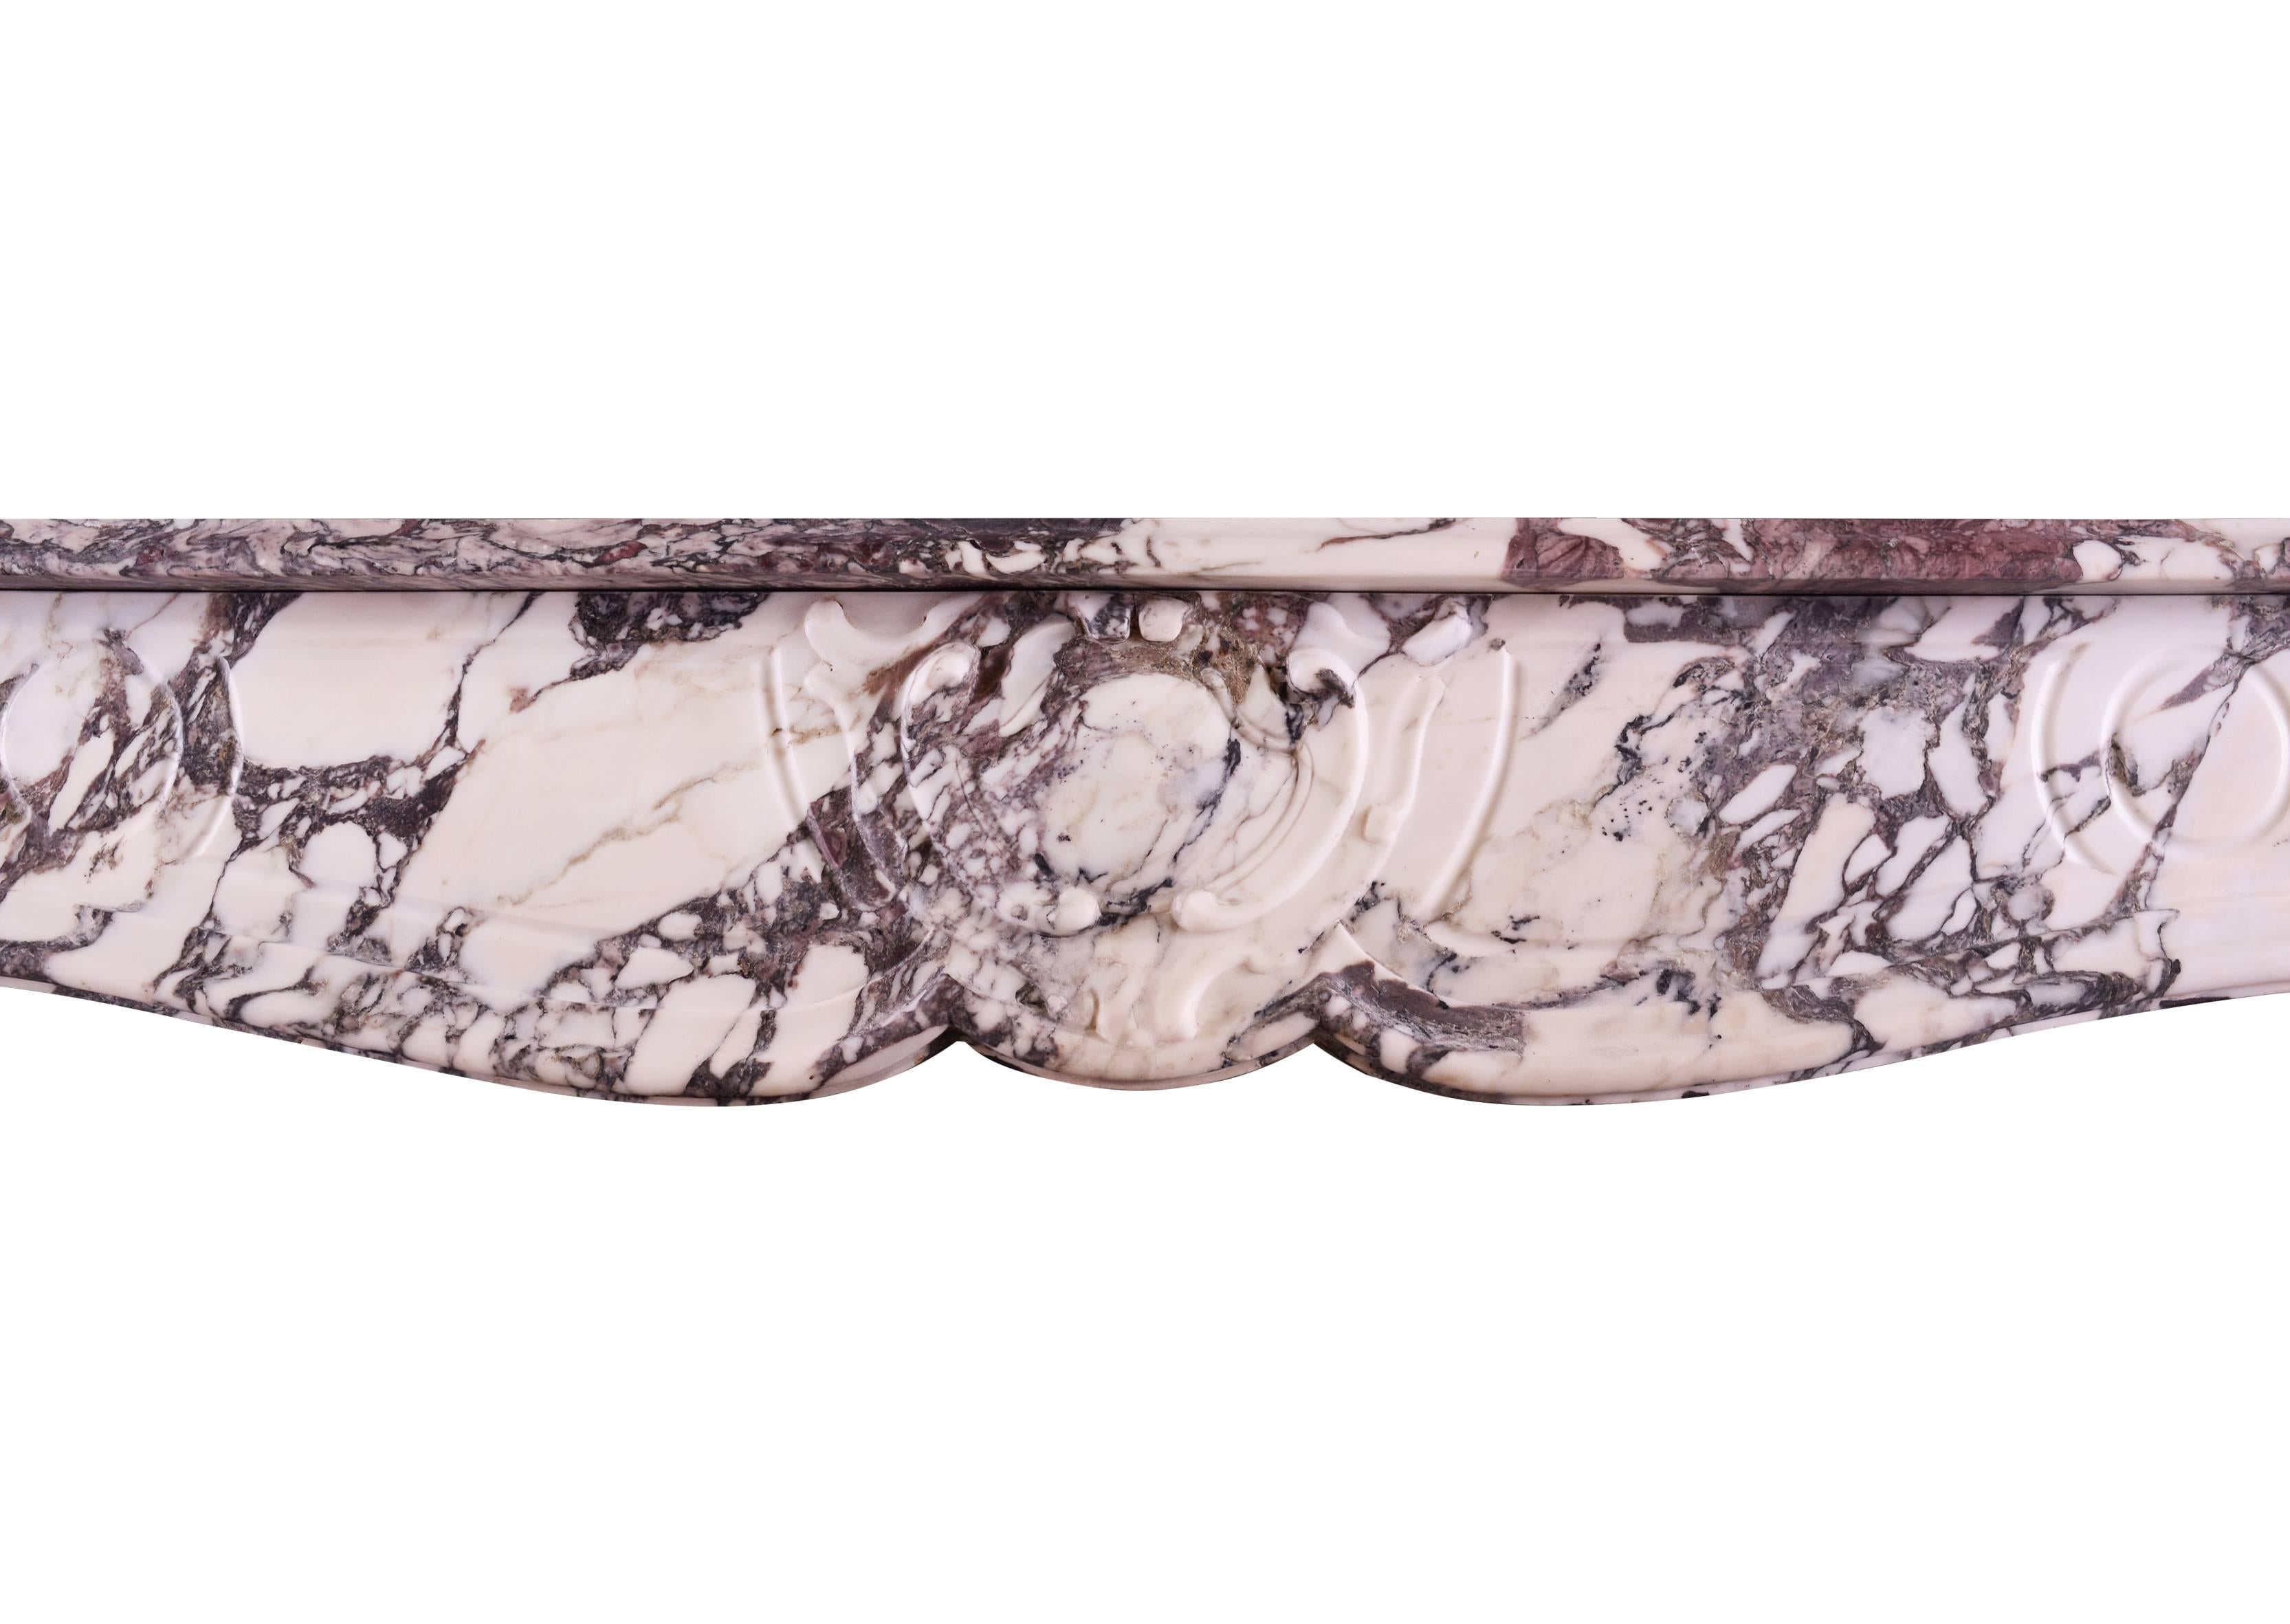 Cheminée provençale française de style Louis XV en marbre Violette. Les jambages sculptés et façonnés sont surmontés d'une frise lambrissée avec un cartouche sculpté au centre. Etagère moulurée au-dessus. Marbre Breccia de bonne qualité.

Mesures :